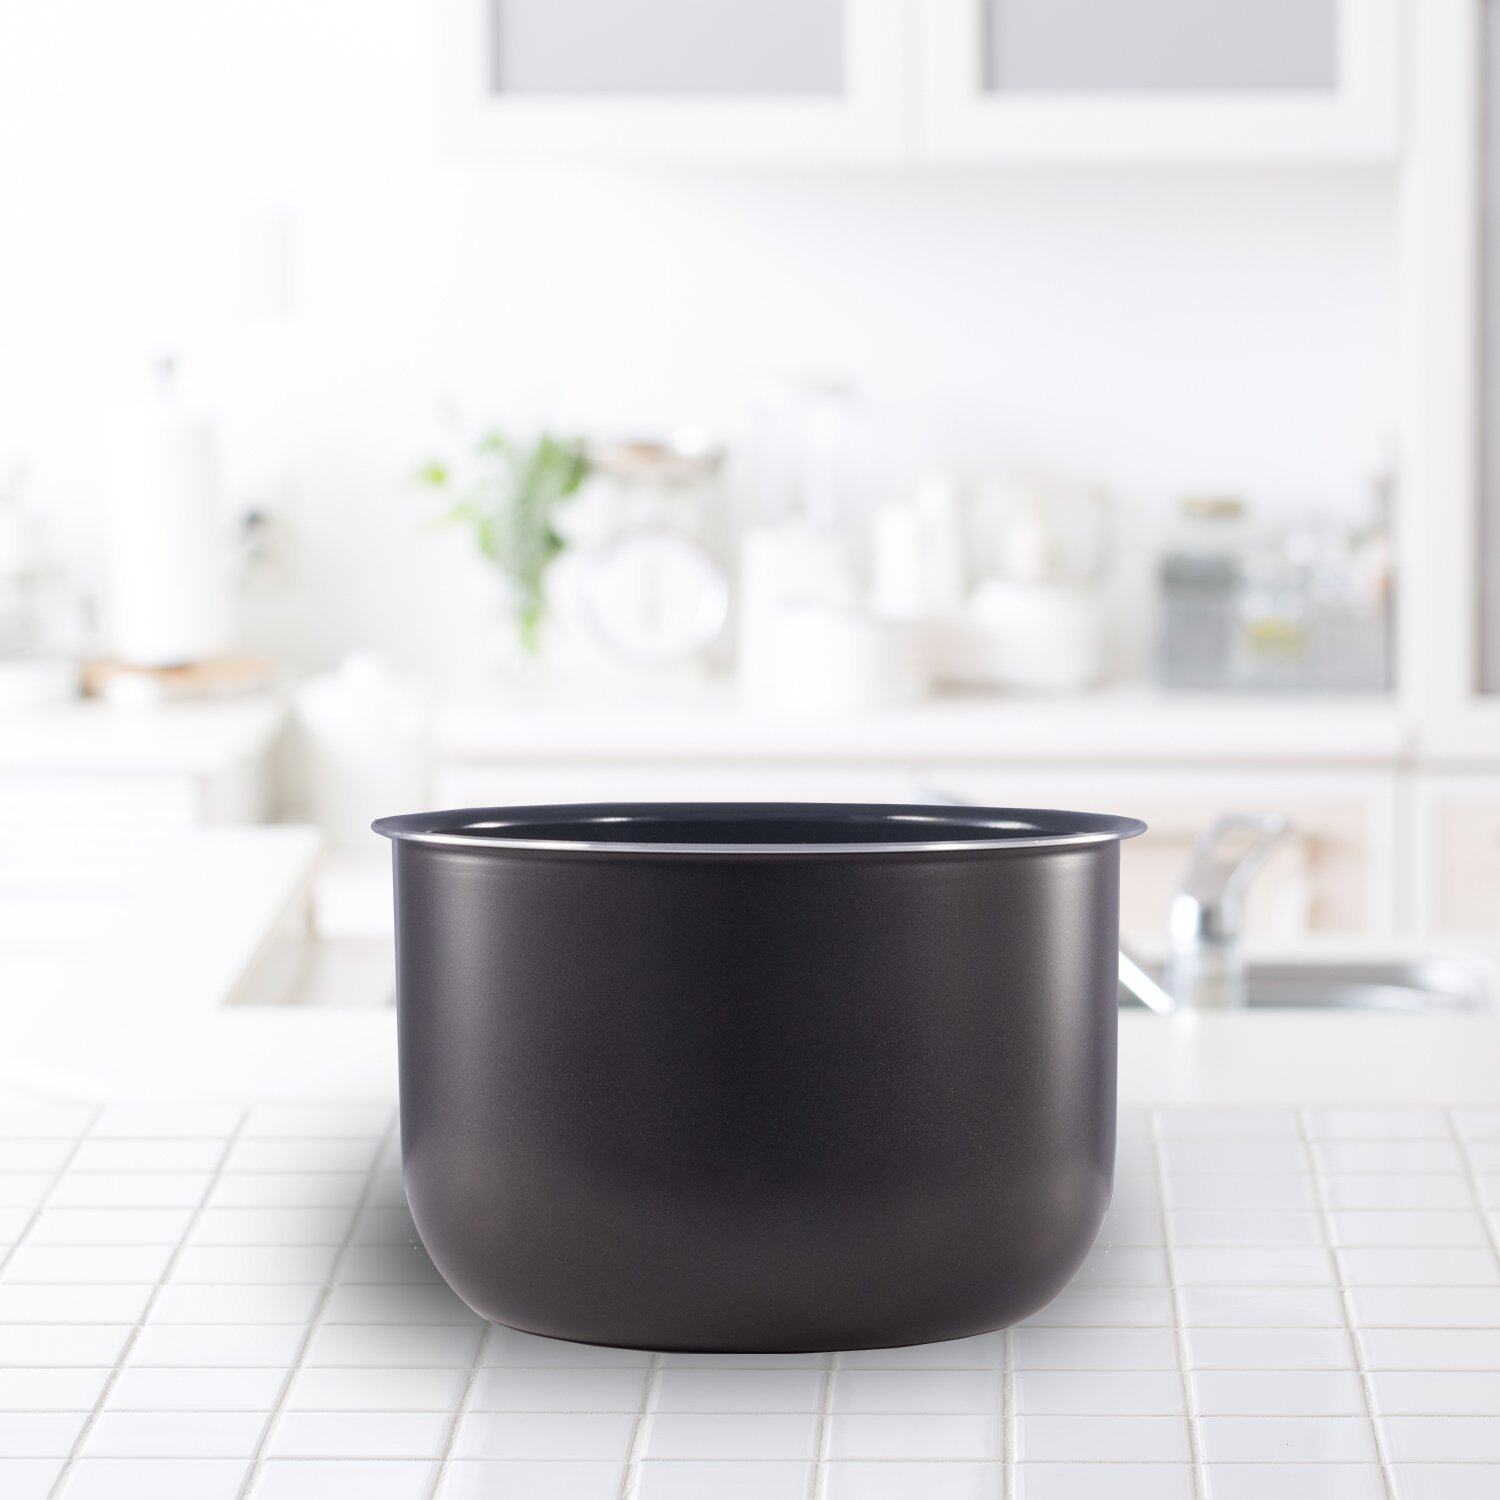 หม้อเซรามิคเคลือบใช้กับ Instant Pot ขนาด 3, 6, 8 Quart ของแท้นำเข้าจากอเมริกา Instant Pot Ceramic Non Stick Interior Coated Inner Cooking Pot Mini 3, 6, 8 Quart Authentic Accessories Dishwasher Safe